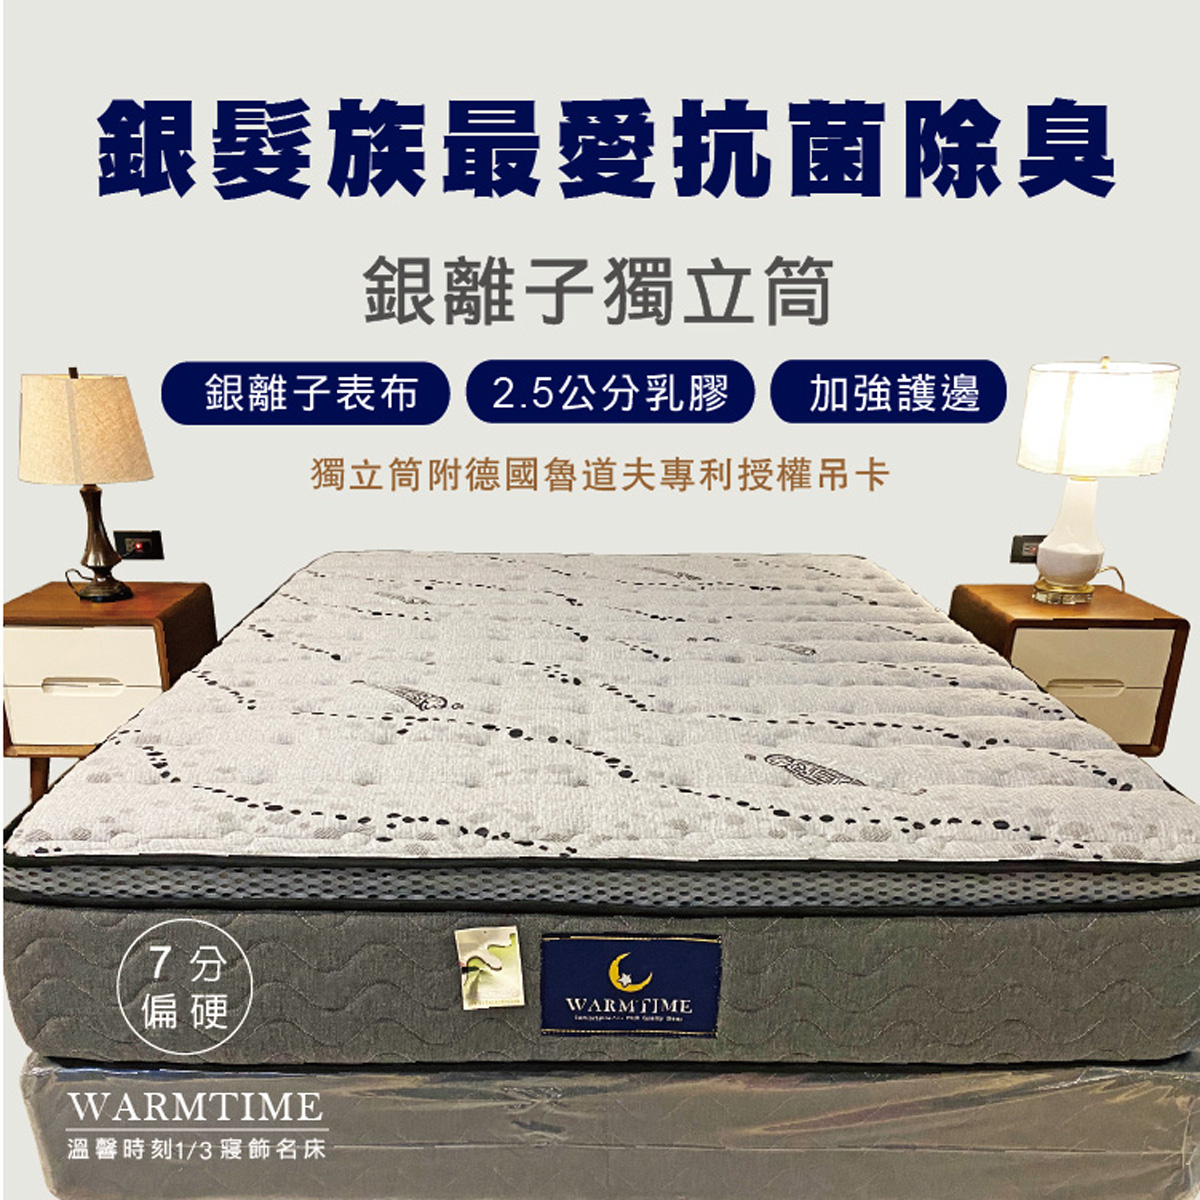 溫馨時刻床墊,獨立筒,台南床墊,台南寢具,彈簧床,5尺雙人床